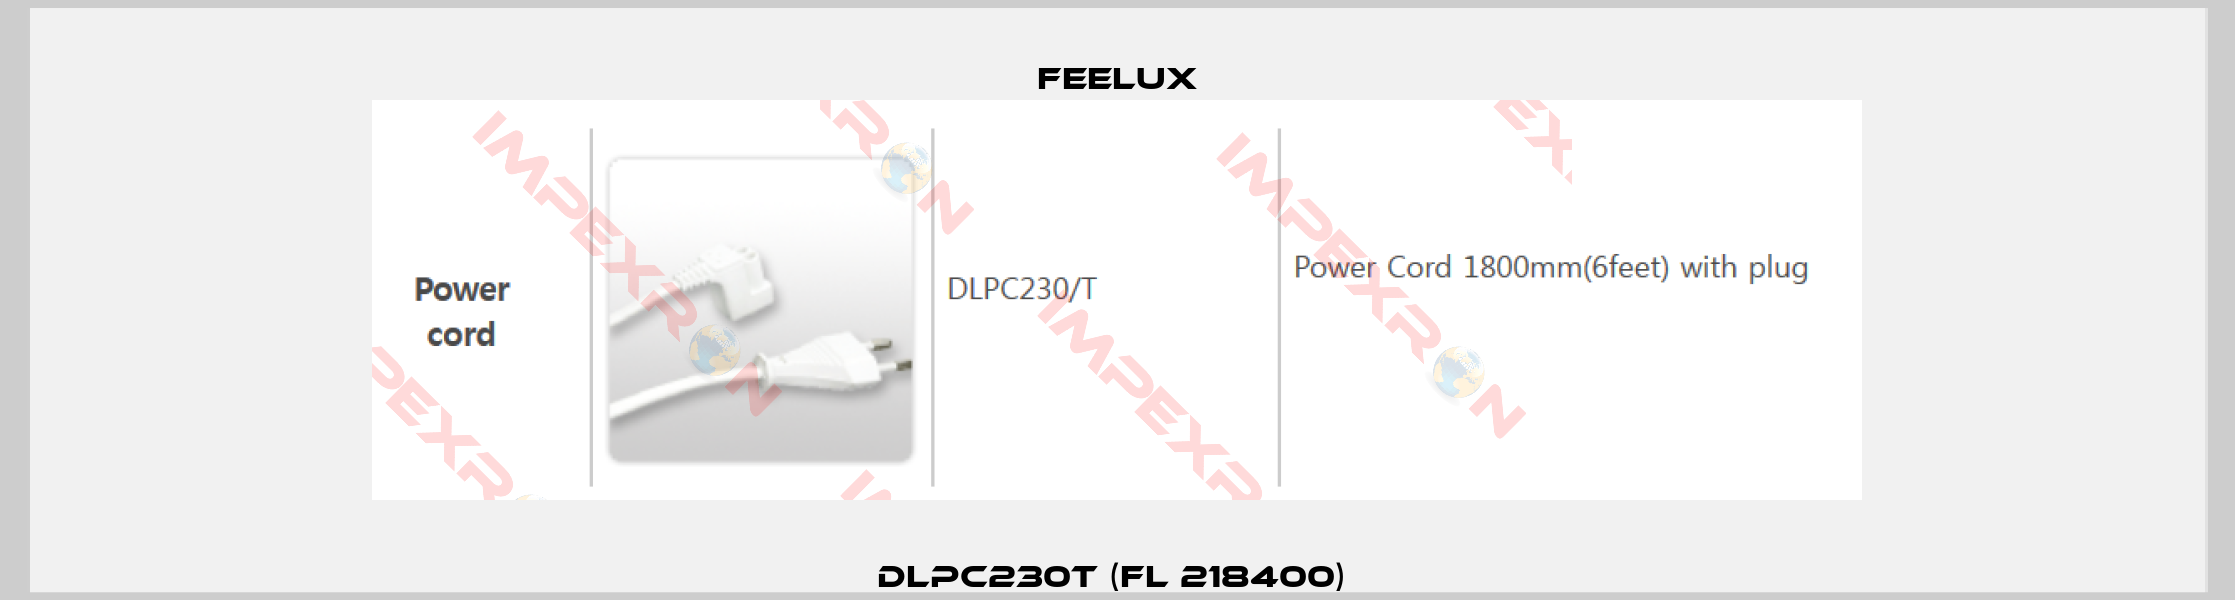 DLPC230T (FL 218400) -0